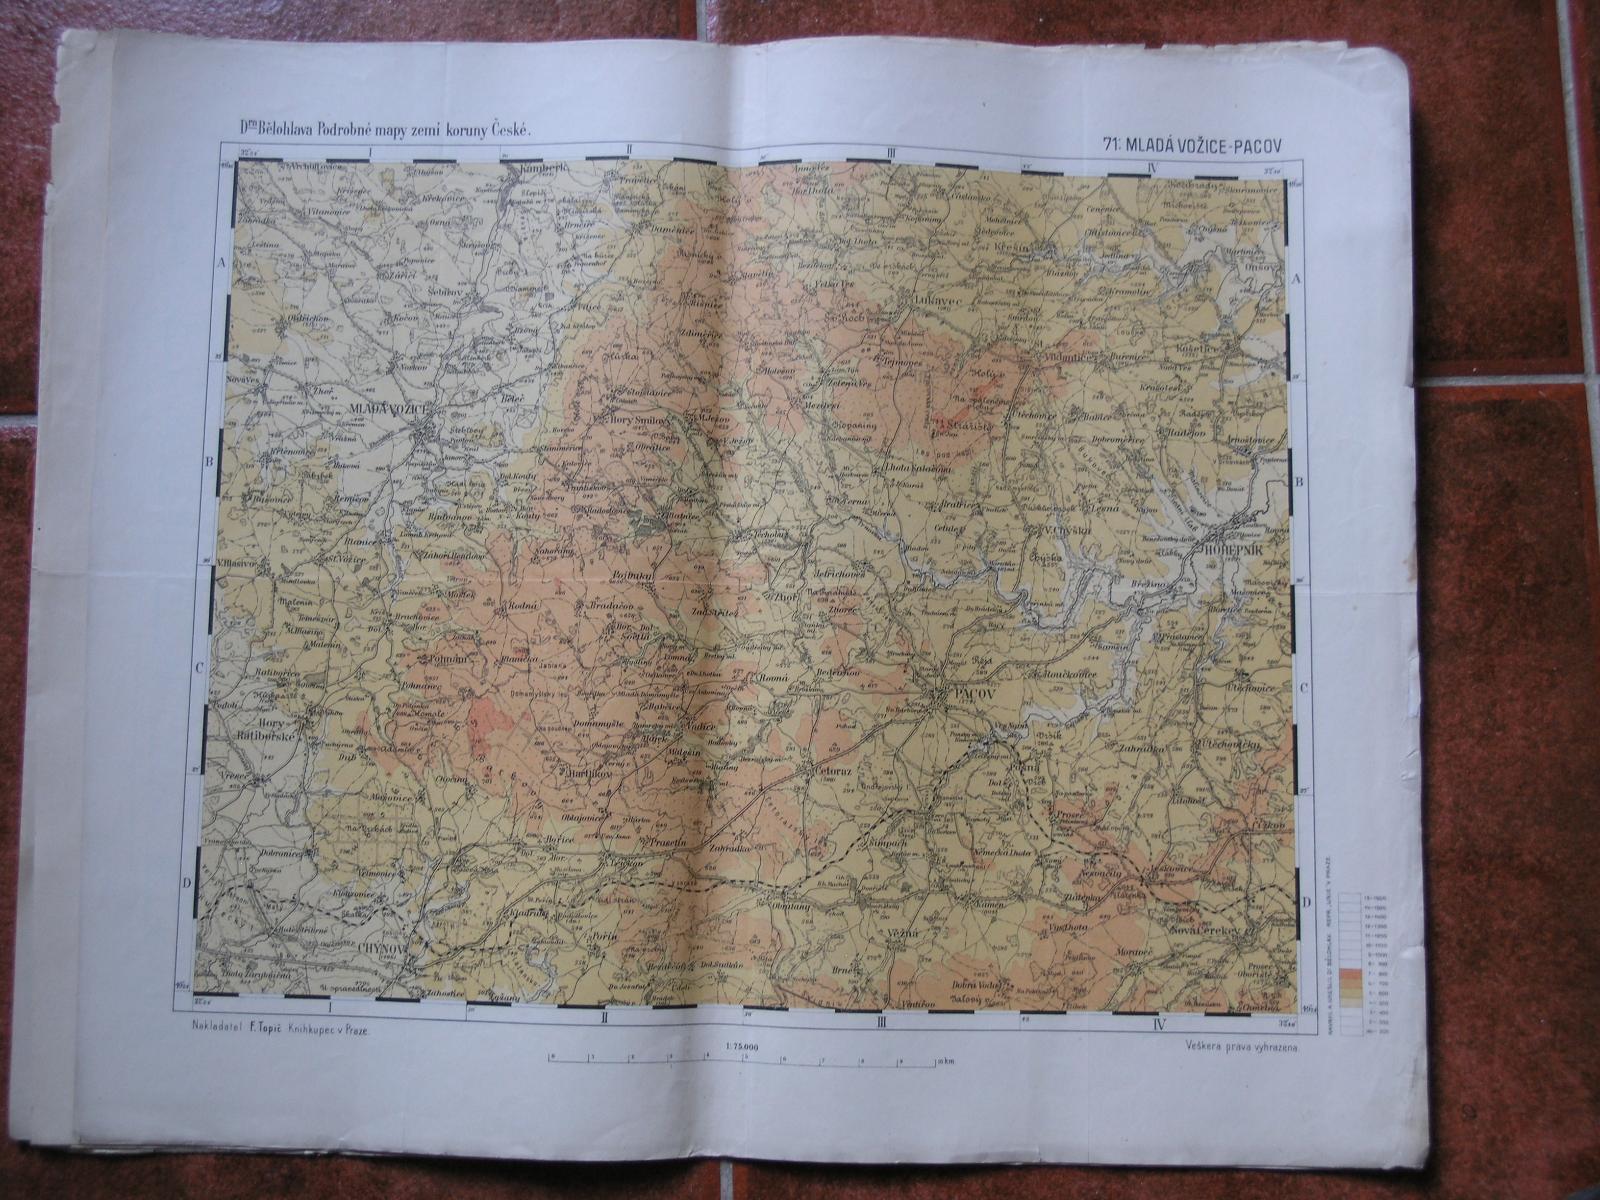 Bielohlav - Mladá Vožice - Paacov - Podrobné mapy ... č. 71 - Staré mapy a veduty